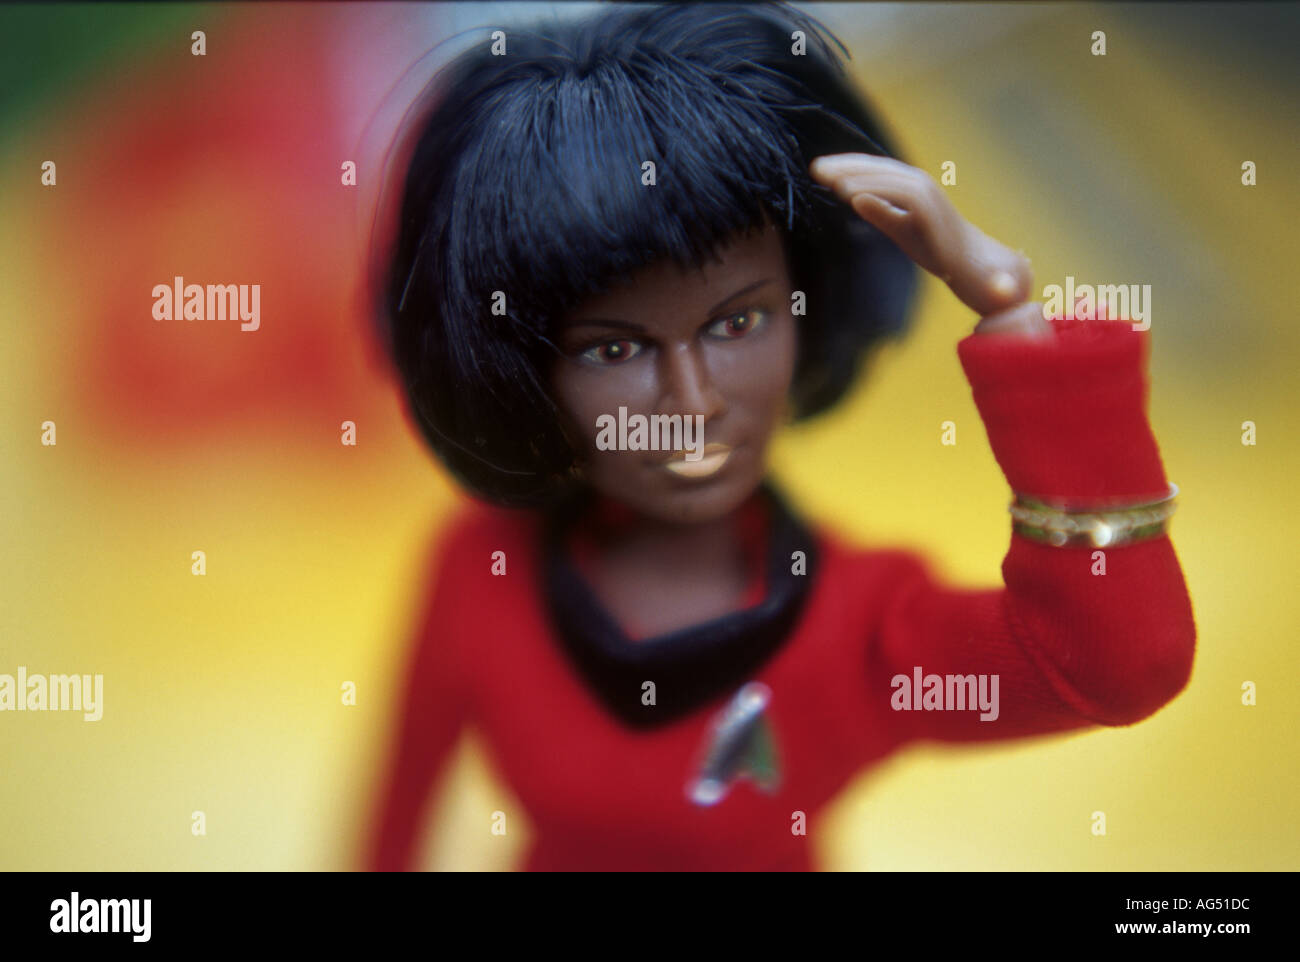 Puppe von Lieutenant Uhura in Starfleet Kostüm aus der TV-show Star Trek  Stockfotografie - Alamy